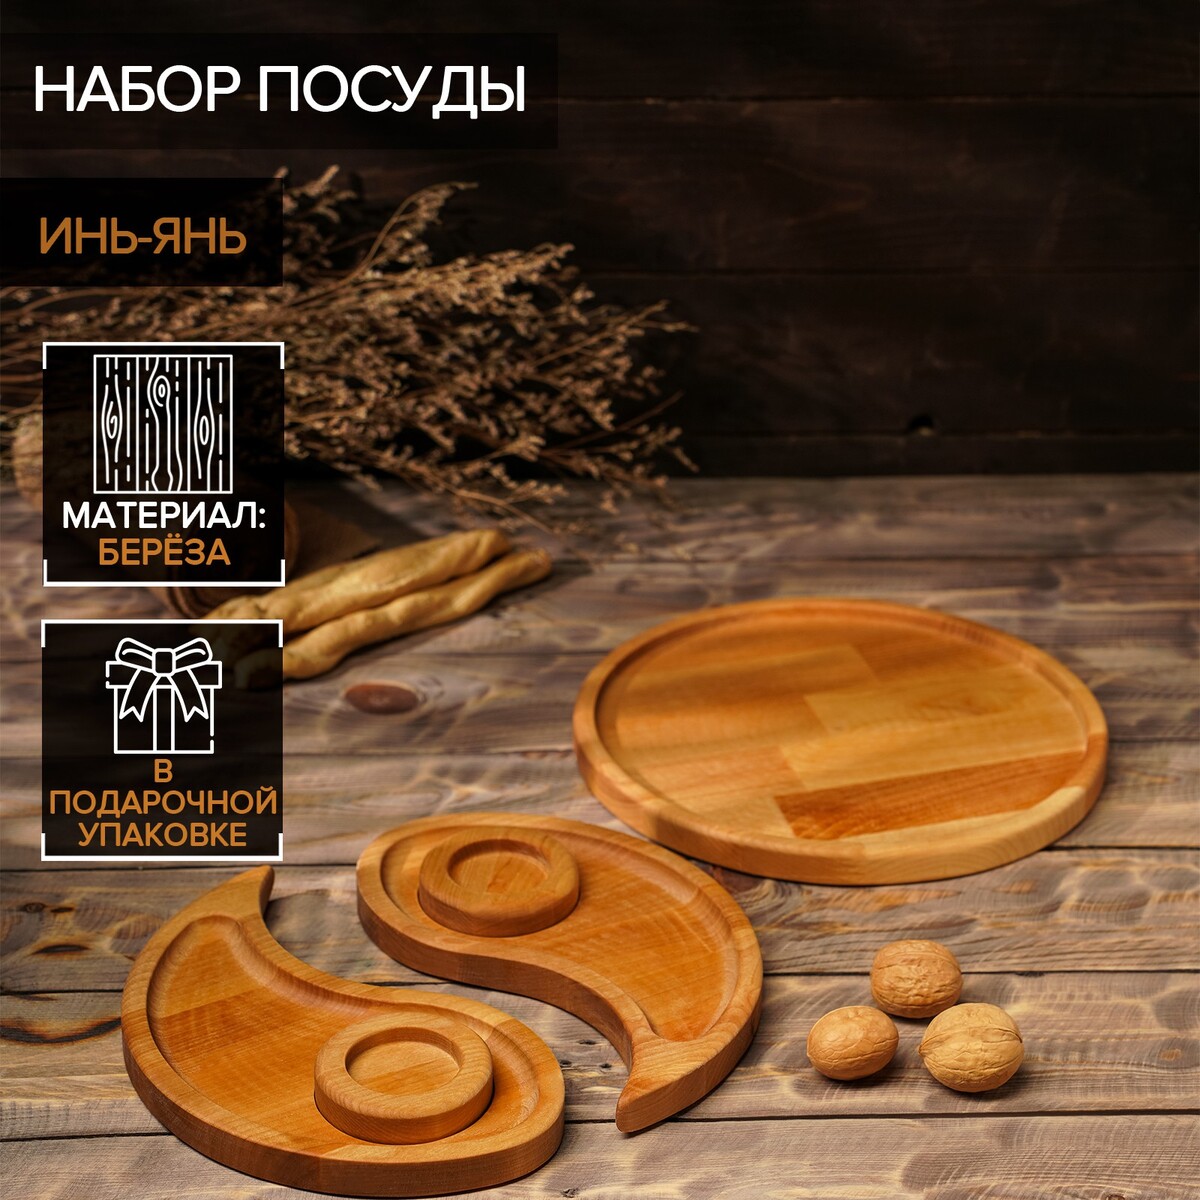 Подарочный набор деревянной посуды adelica набор спонжей на деревянной ручке 4 шт 10 см